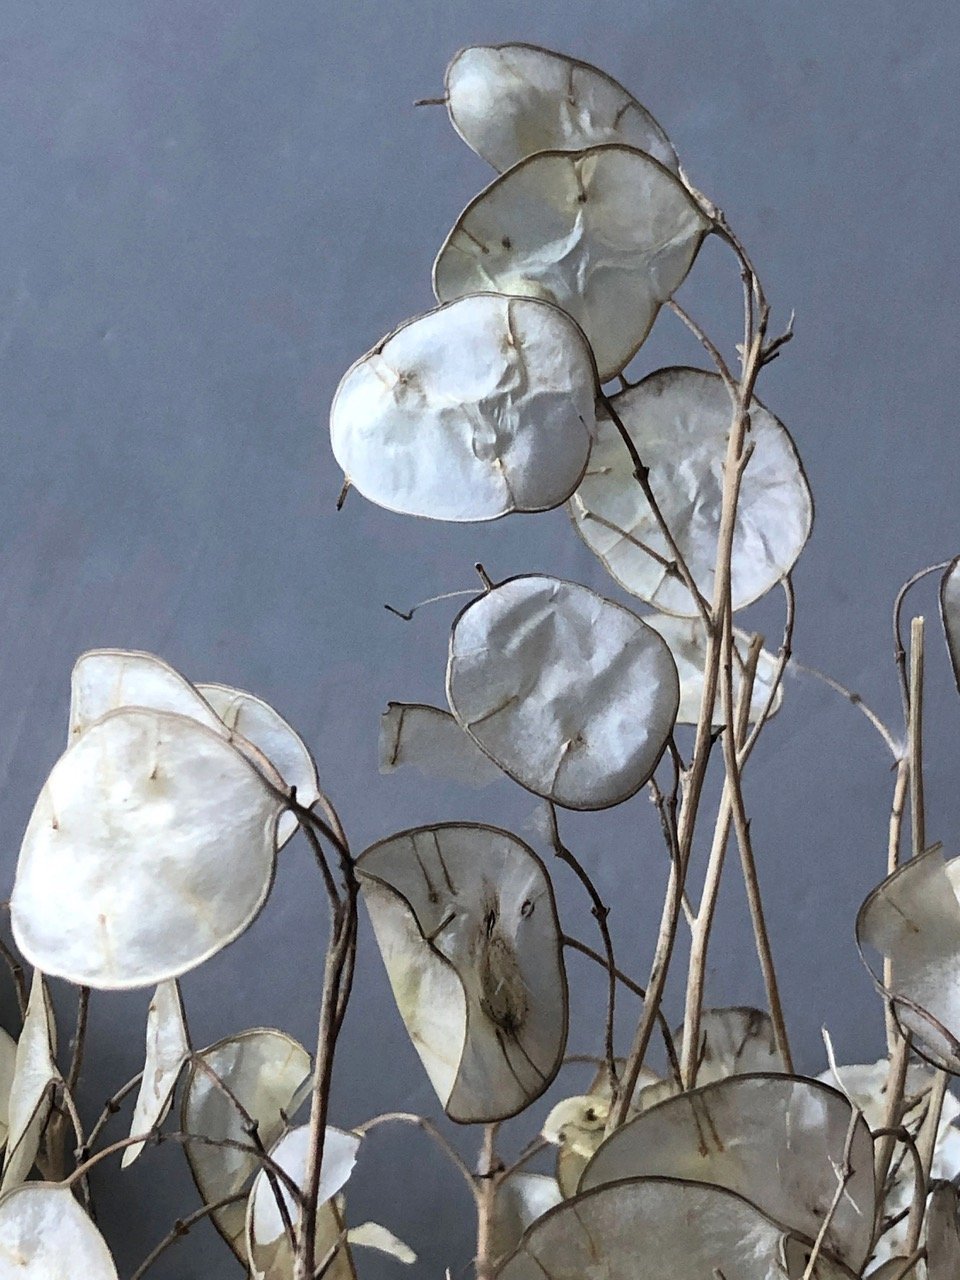 Dried Lunaria 3 stems